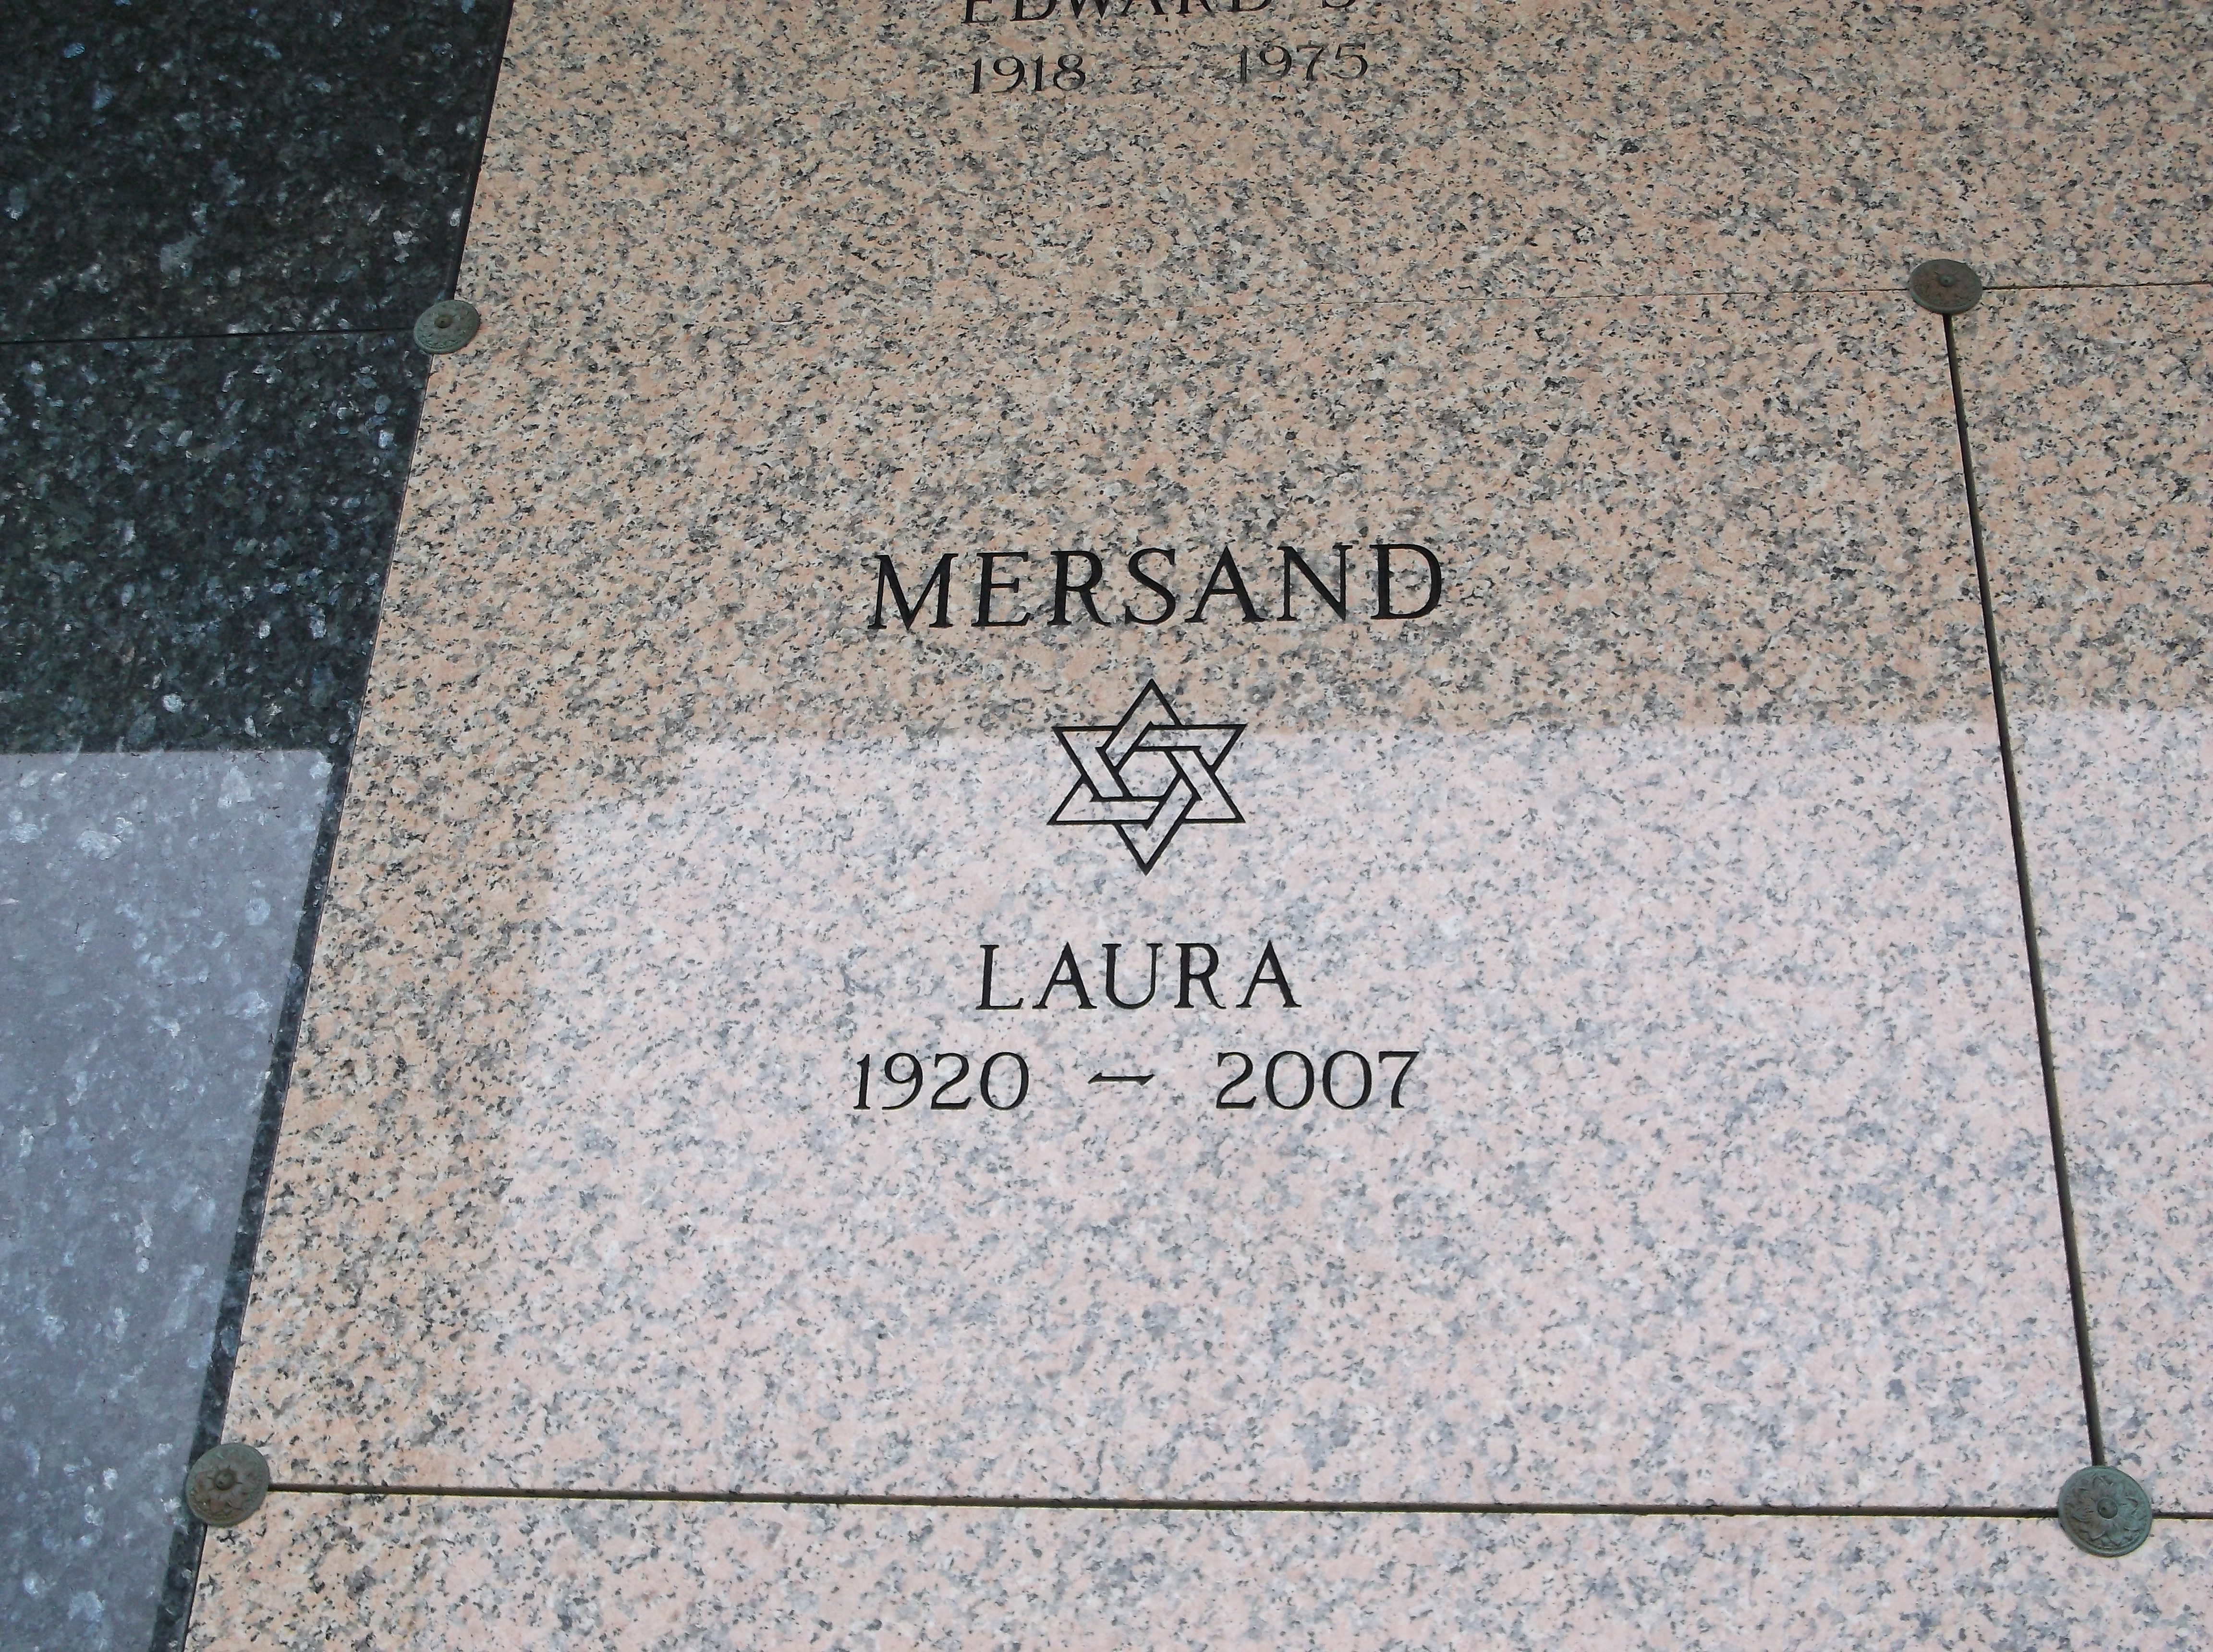 Laura Mersand